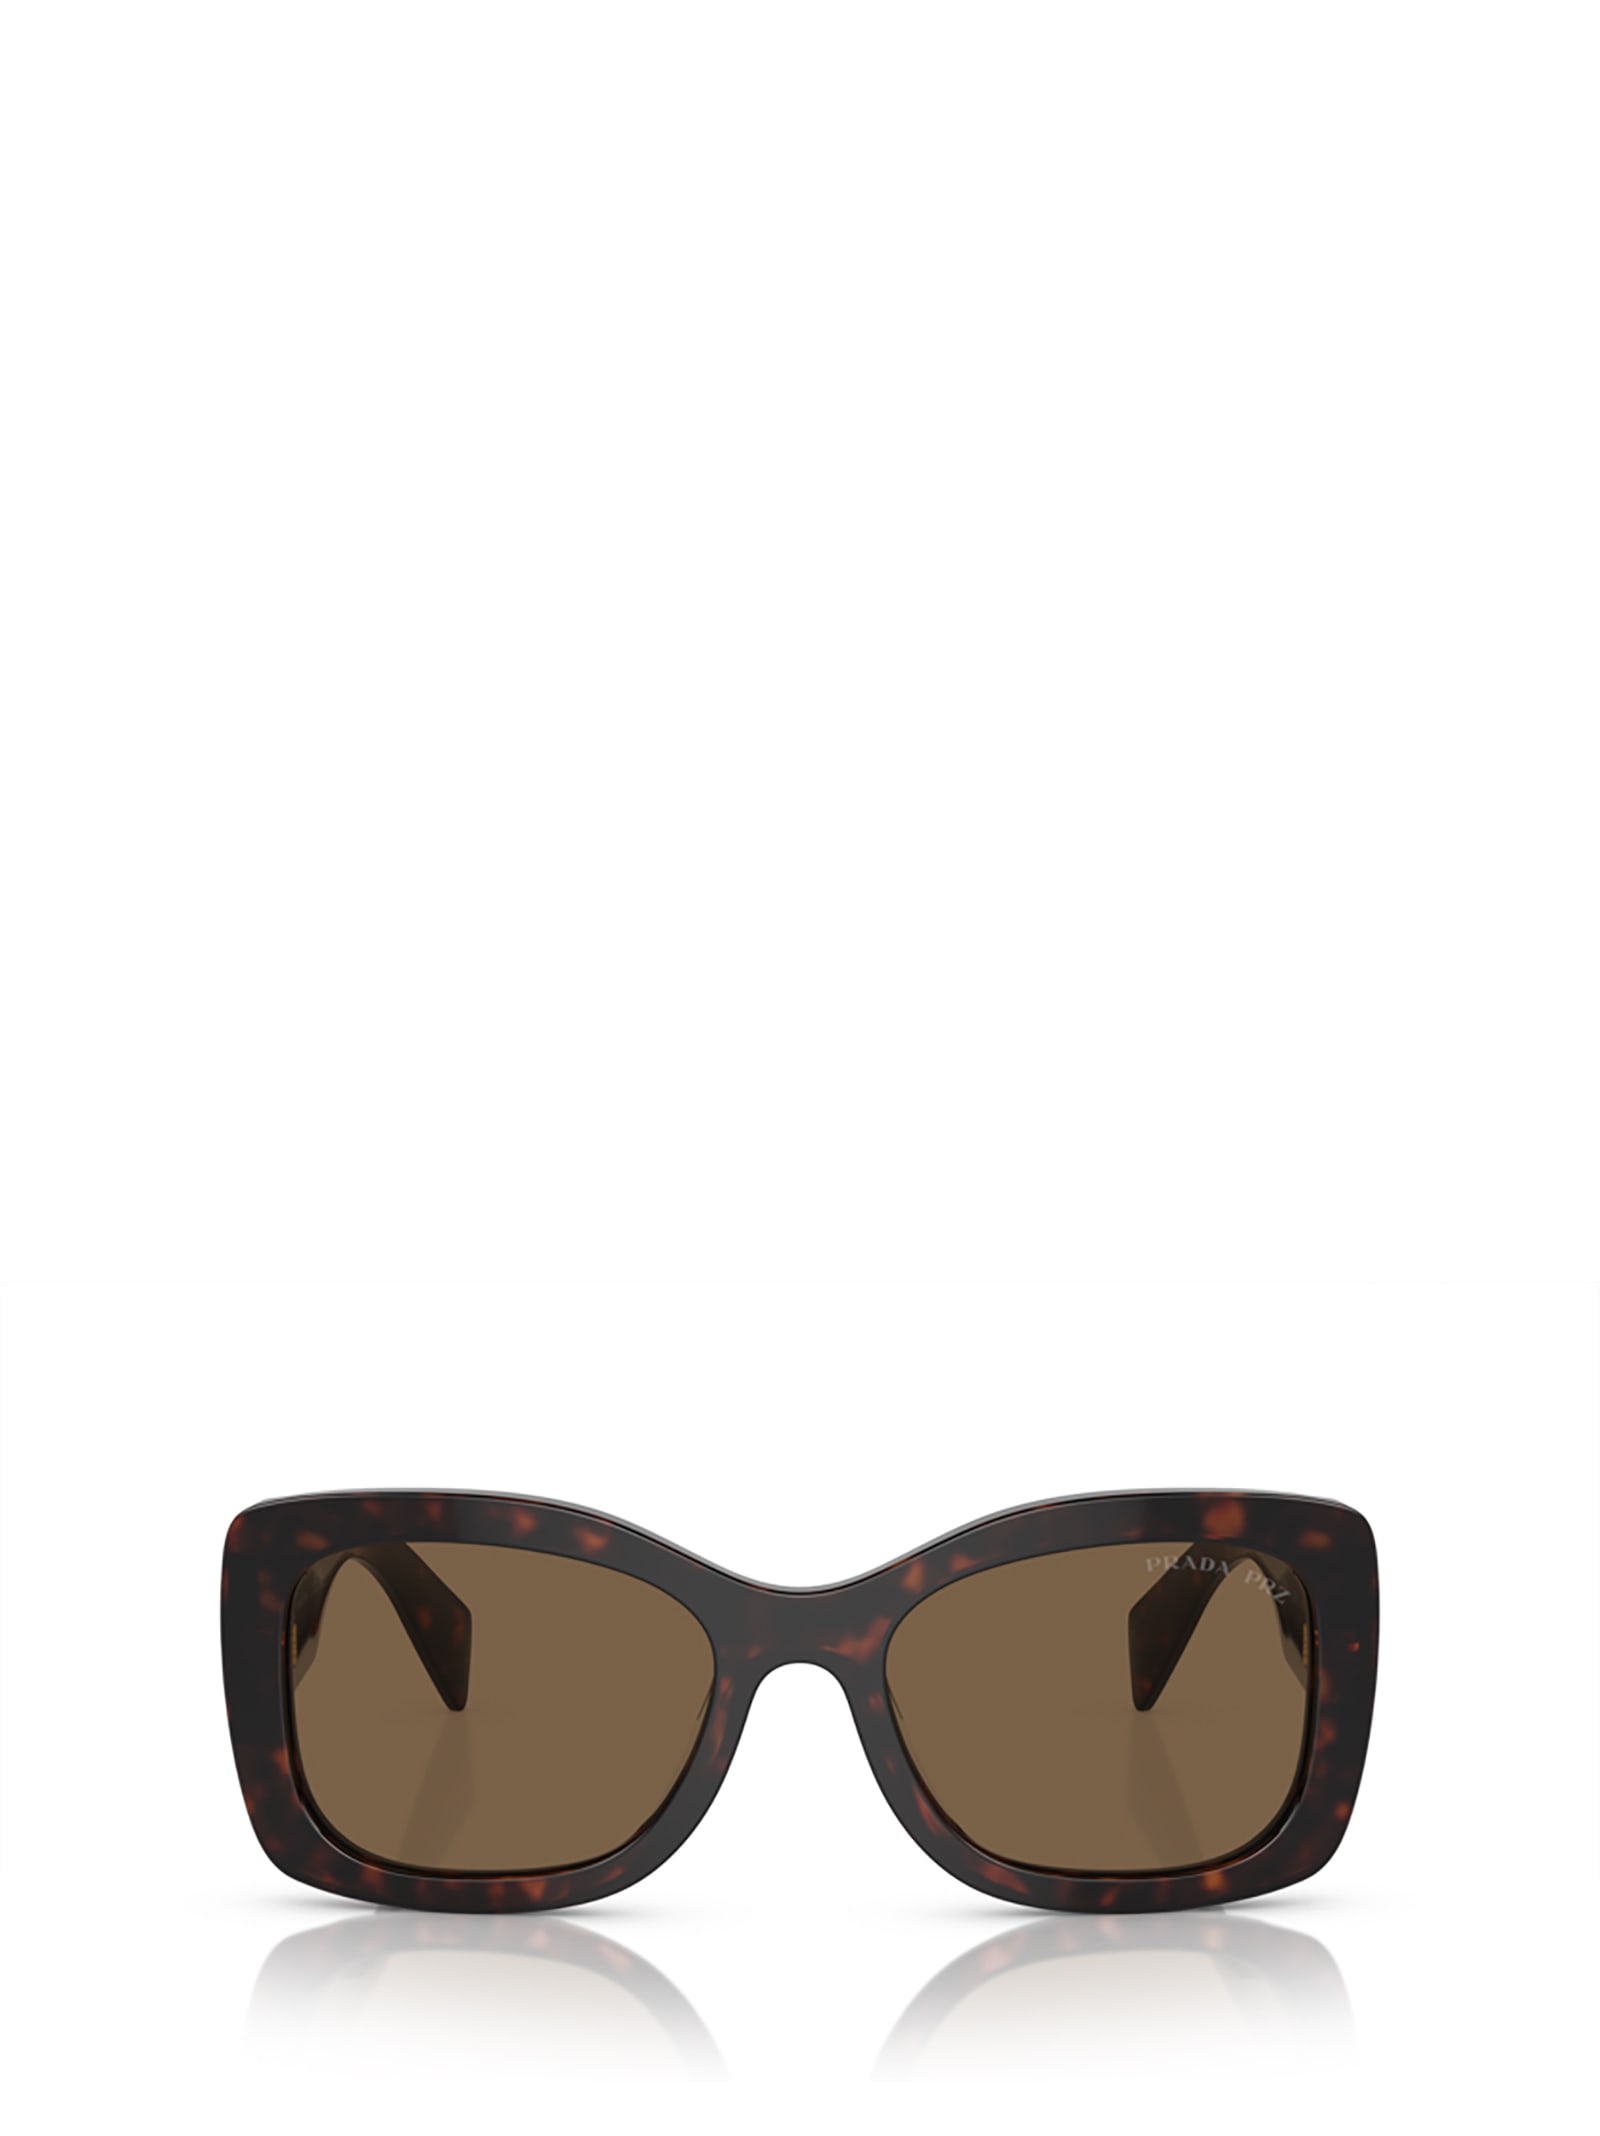 Prada Pr A08s Briar Tortoise Sunglasses